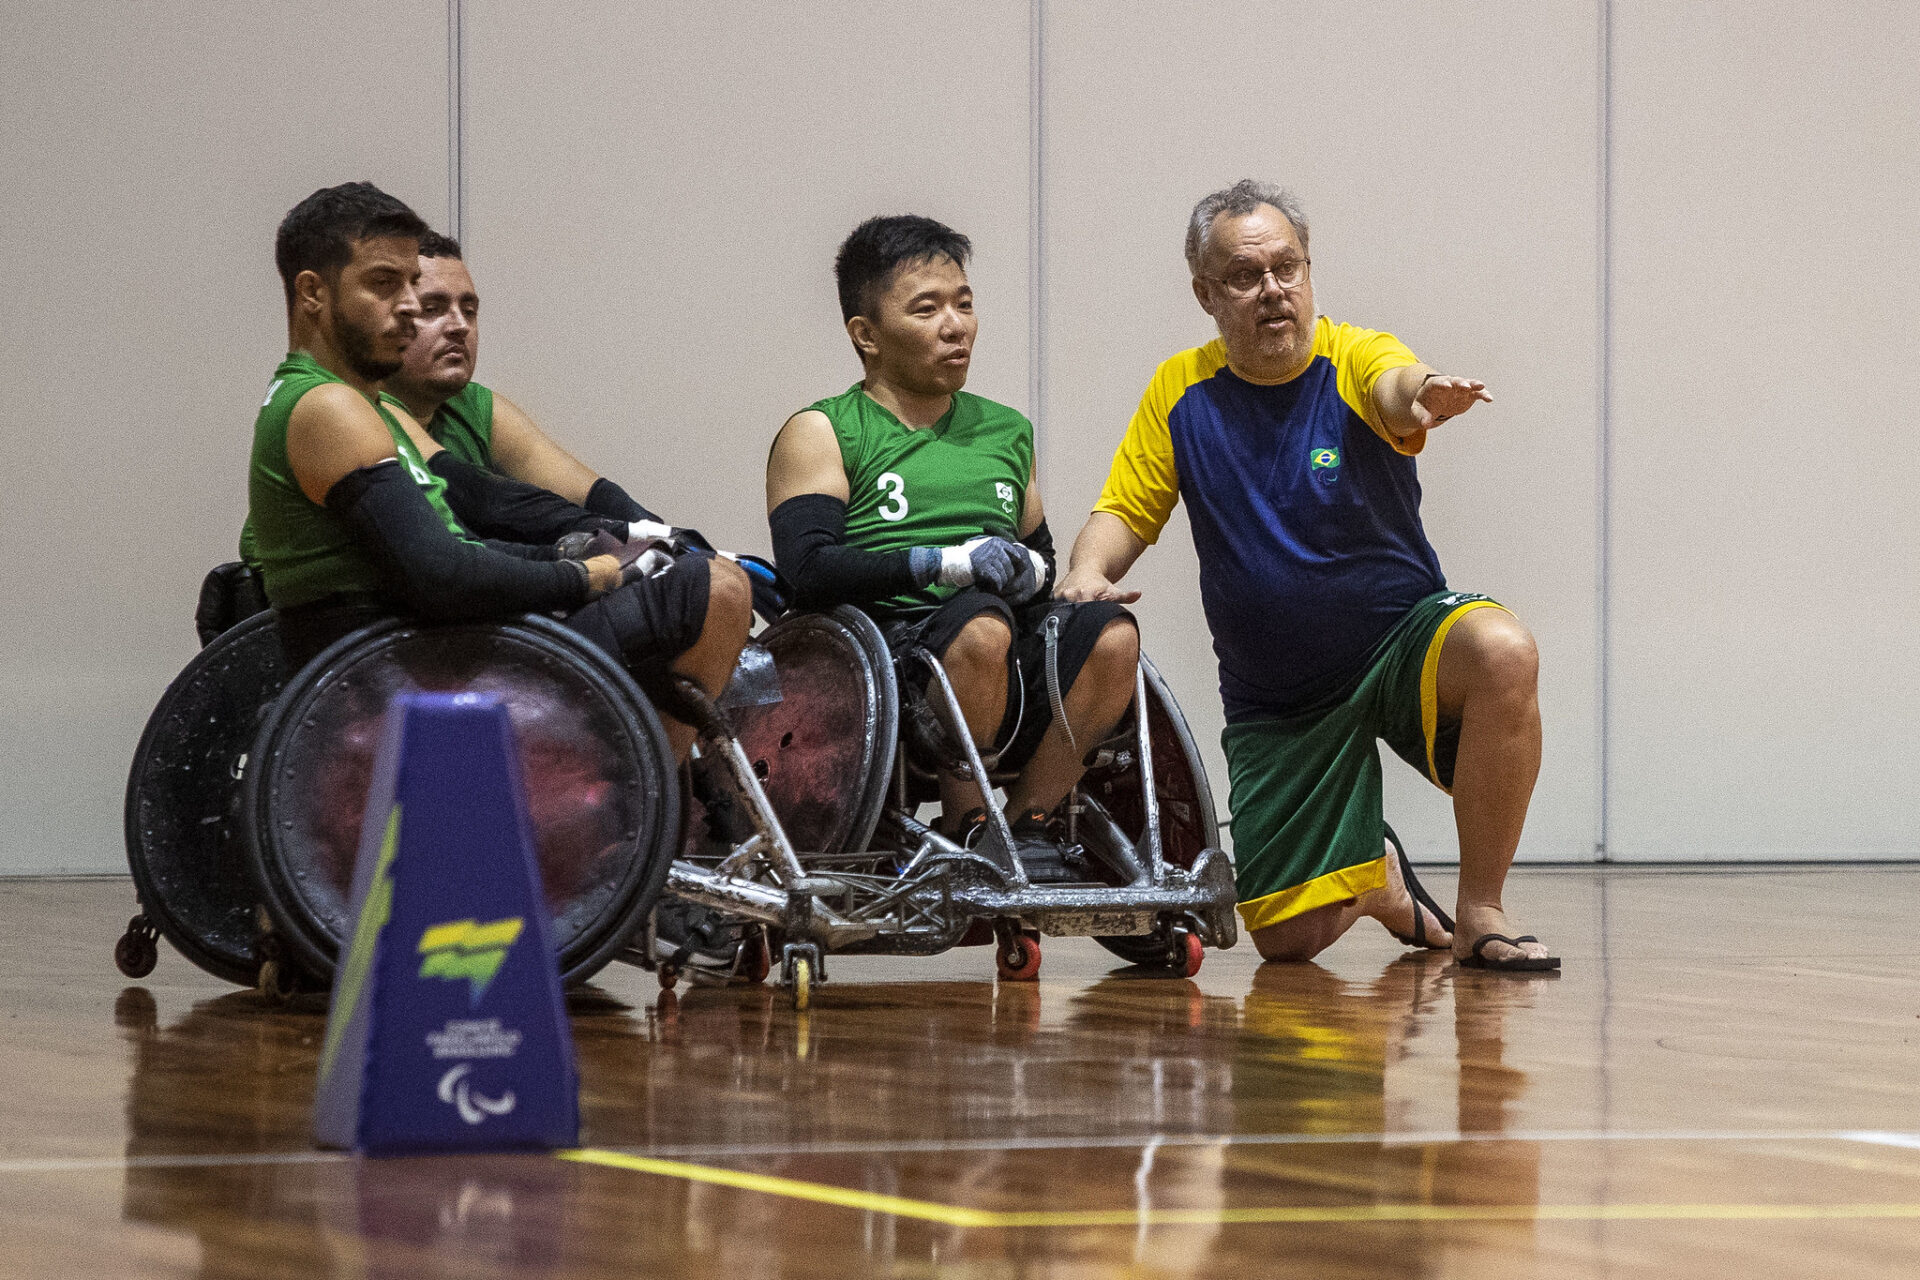 Treinador orienta jogadores de rúgbi em cadeira de rodas na quadra